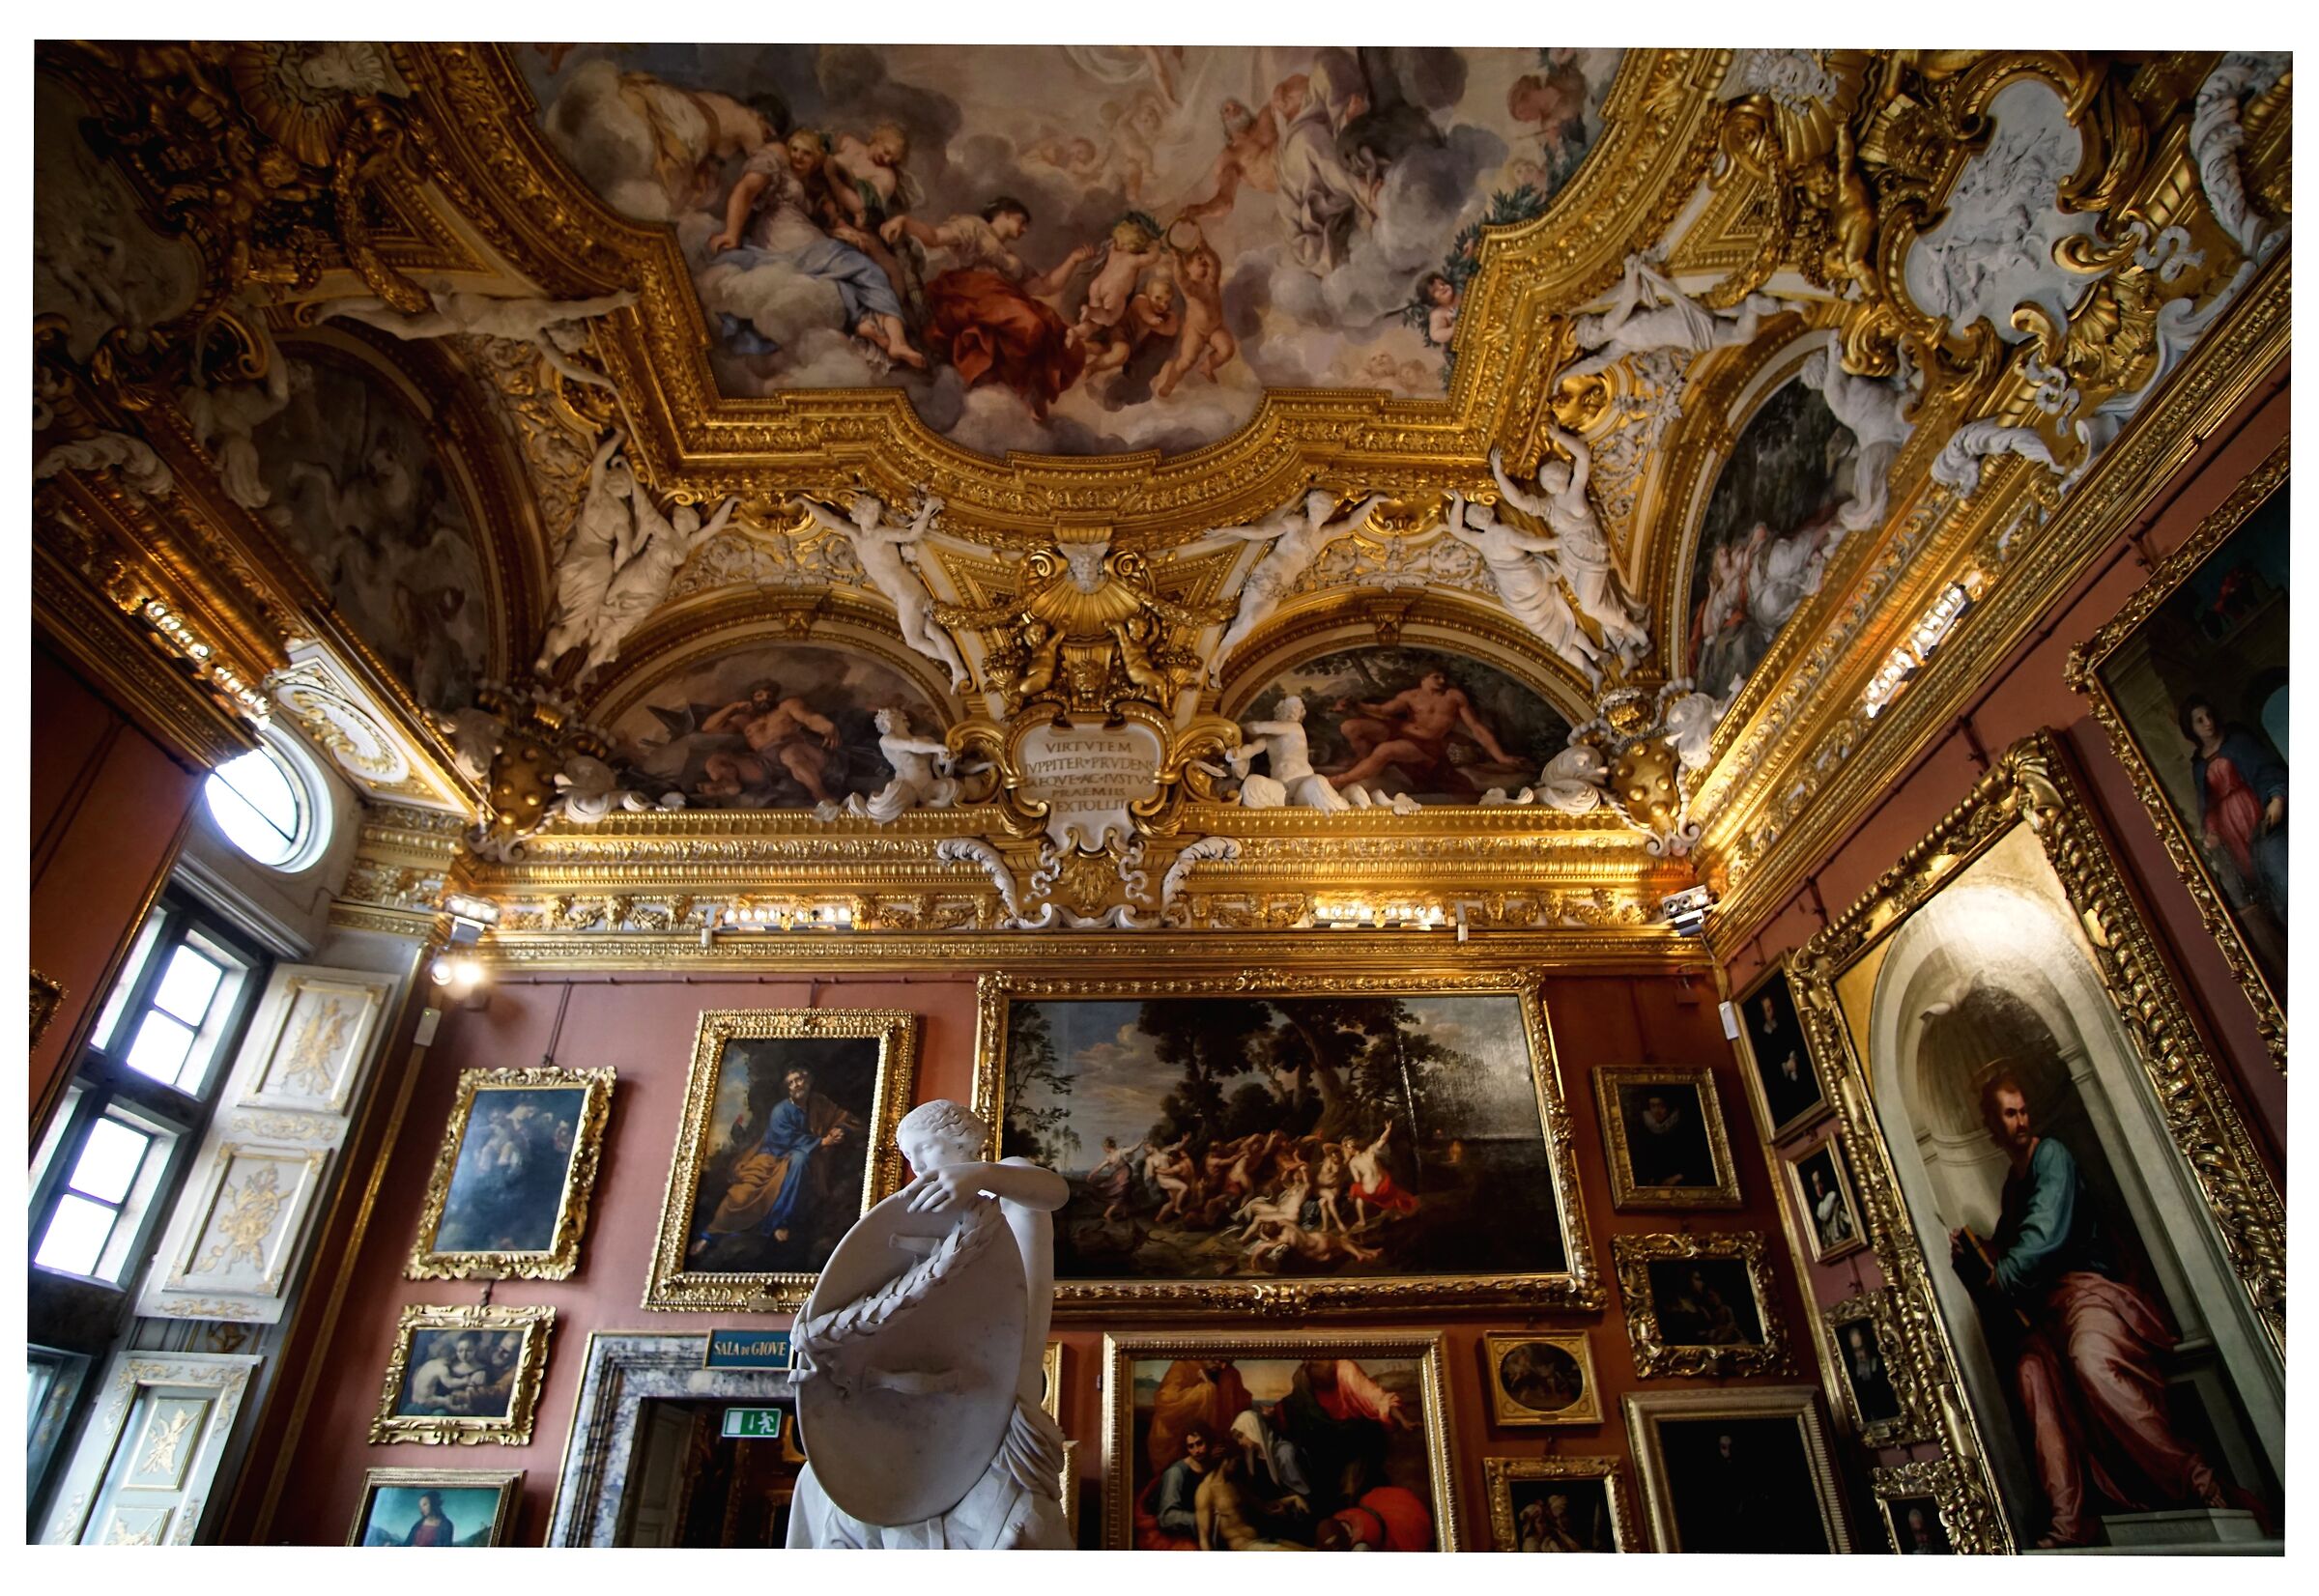 Palatine Gallery "Hall of Jupiter"...